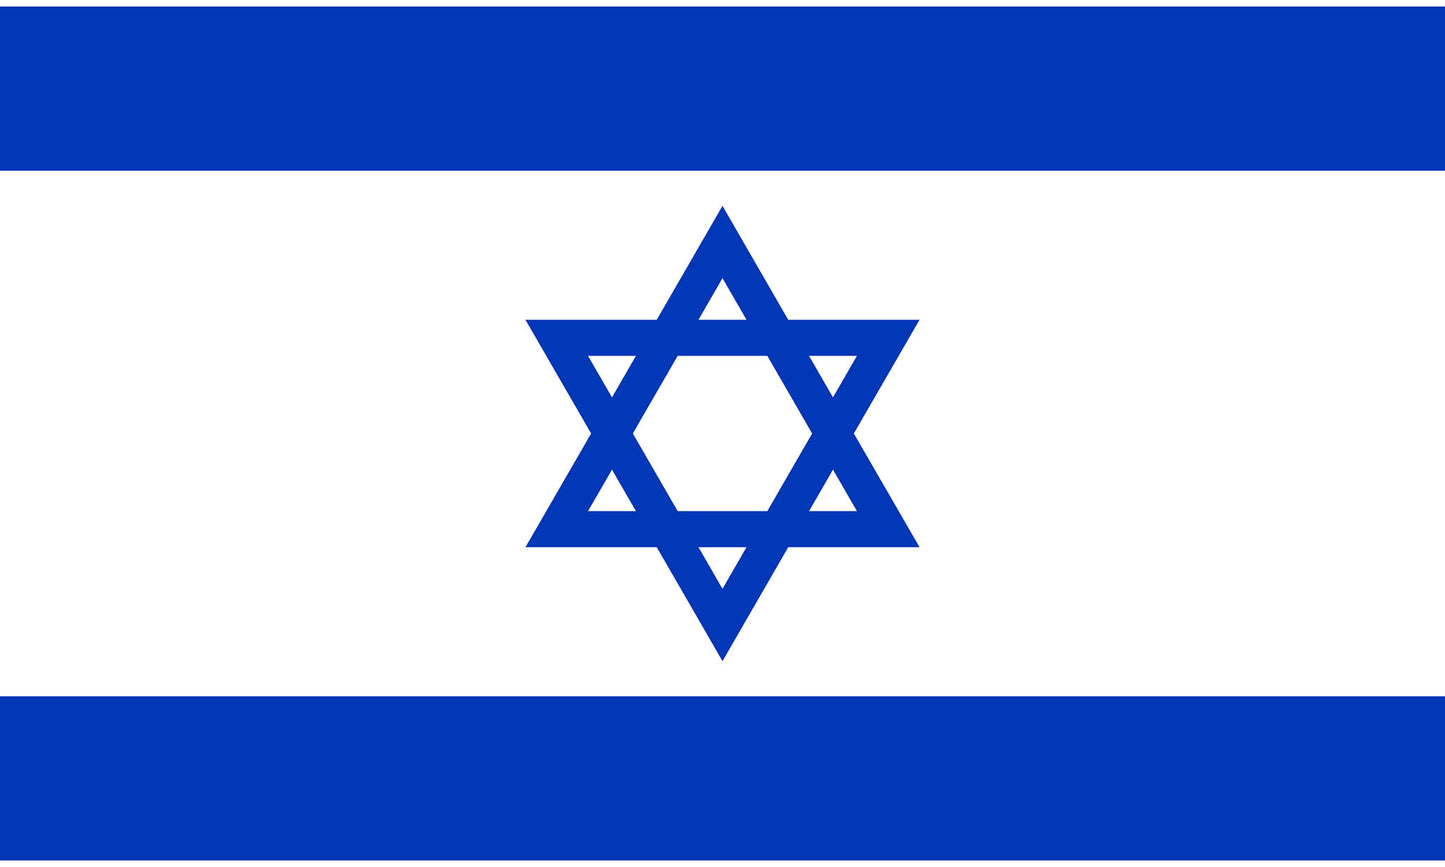 INR-ISR-15x22-1 - государственный флаг Израиля, размер: 15х22 см, материал: атлас. Печать с одной стороны. Подставка и шток приобретаются отдельно